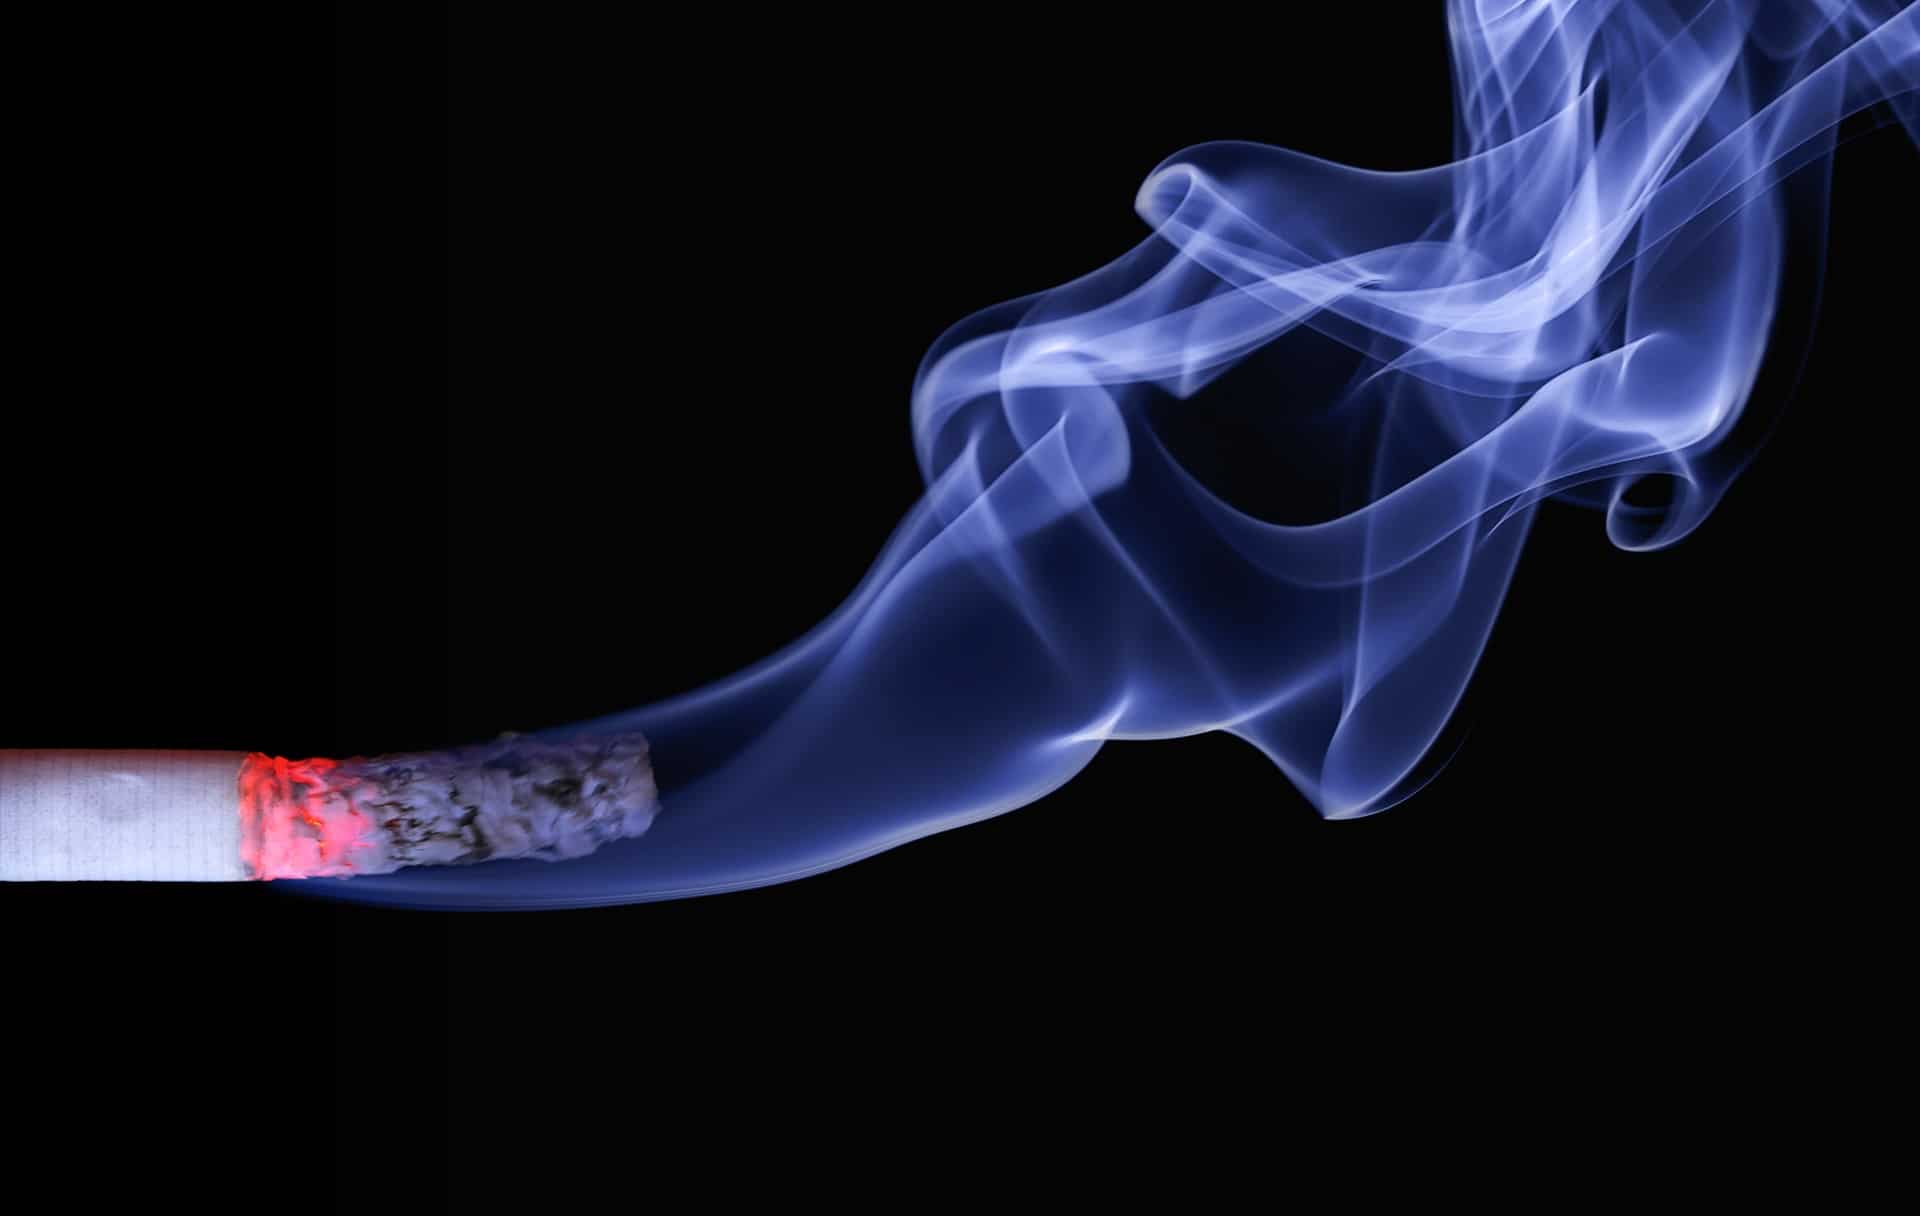 Rauchen nach einer Zahnextraktion und Nikotinstomatitis erklärt